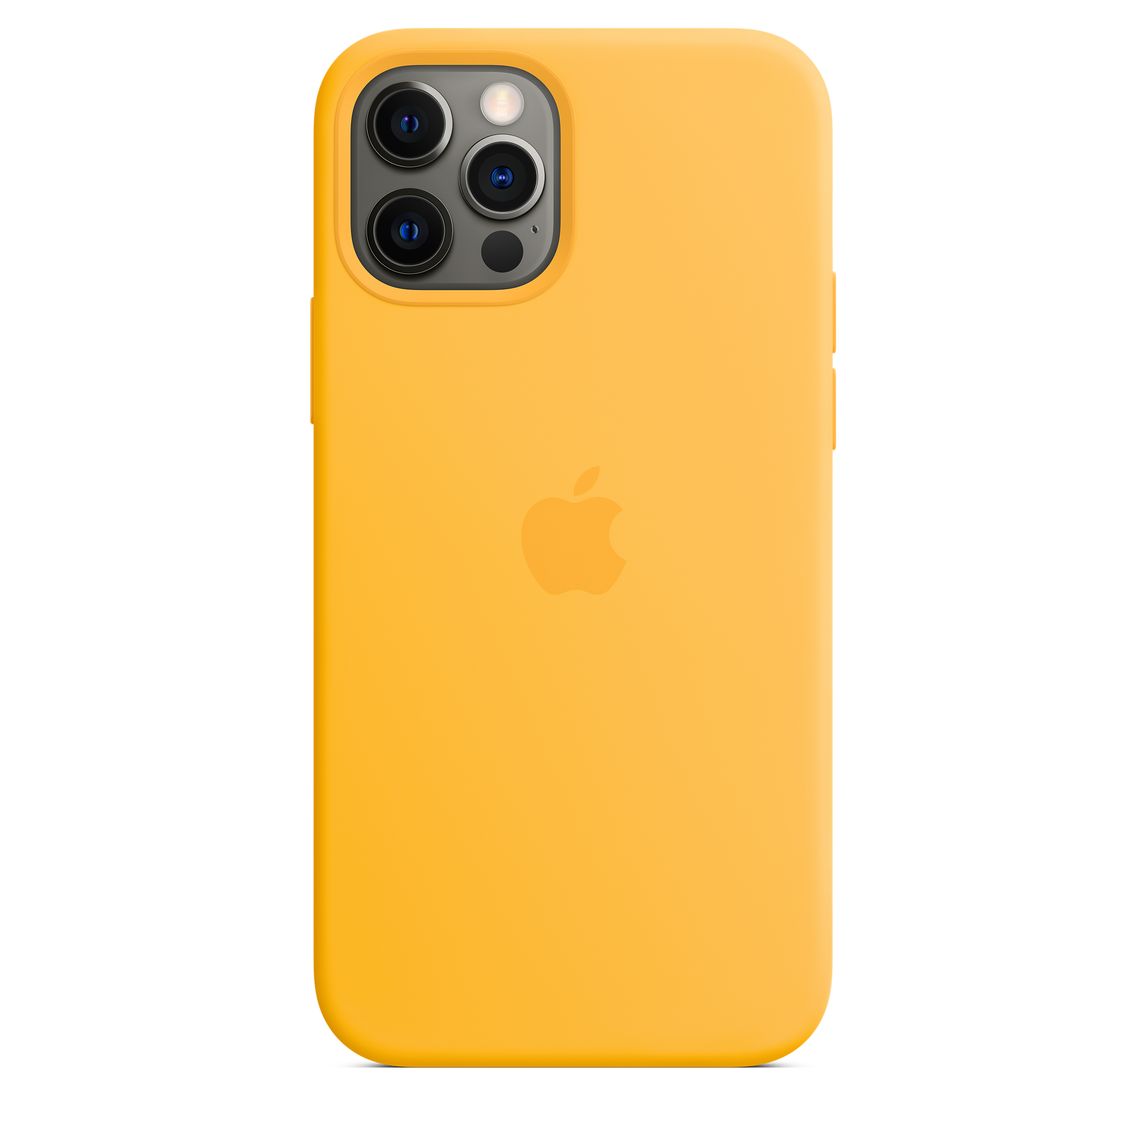 Фото — Чехол для смартфона Apple MagSafe для iPhone 12/12 Pro, cиликон, ярко-желтый